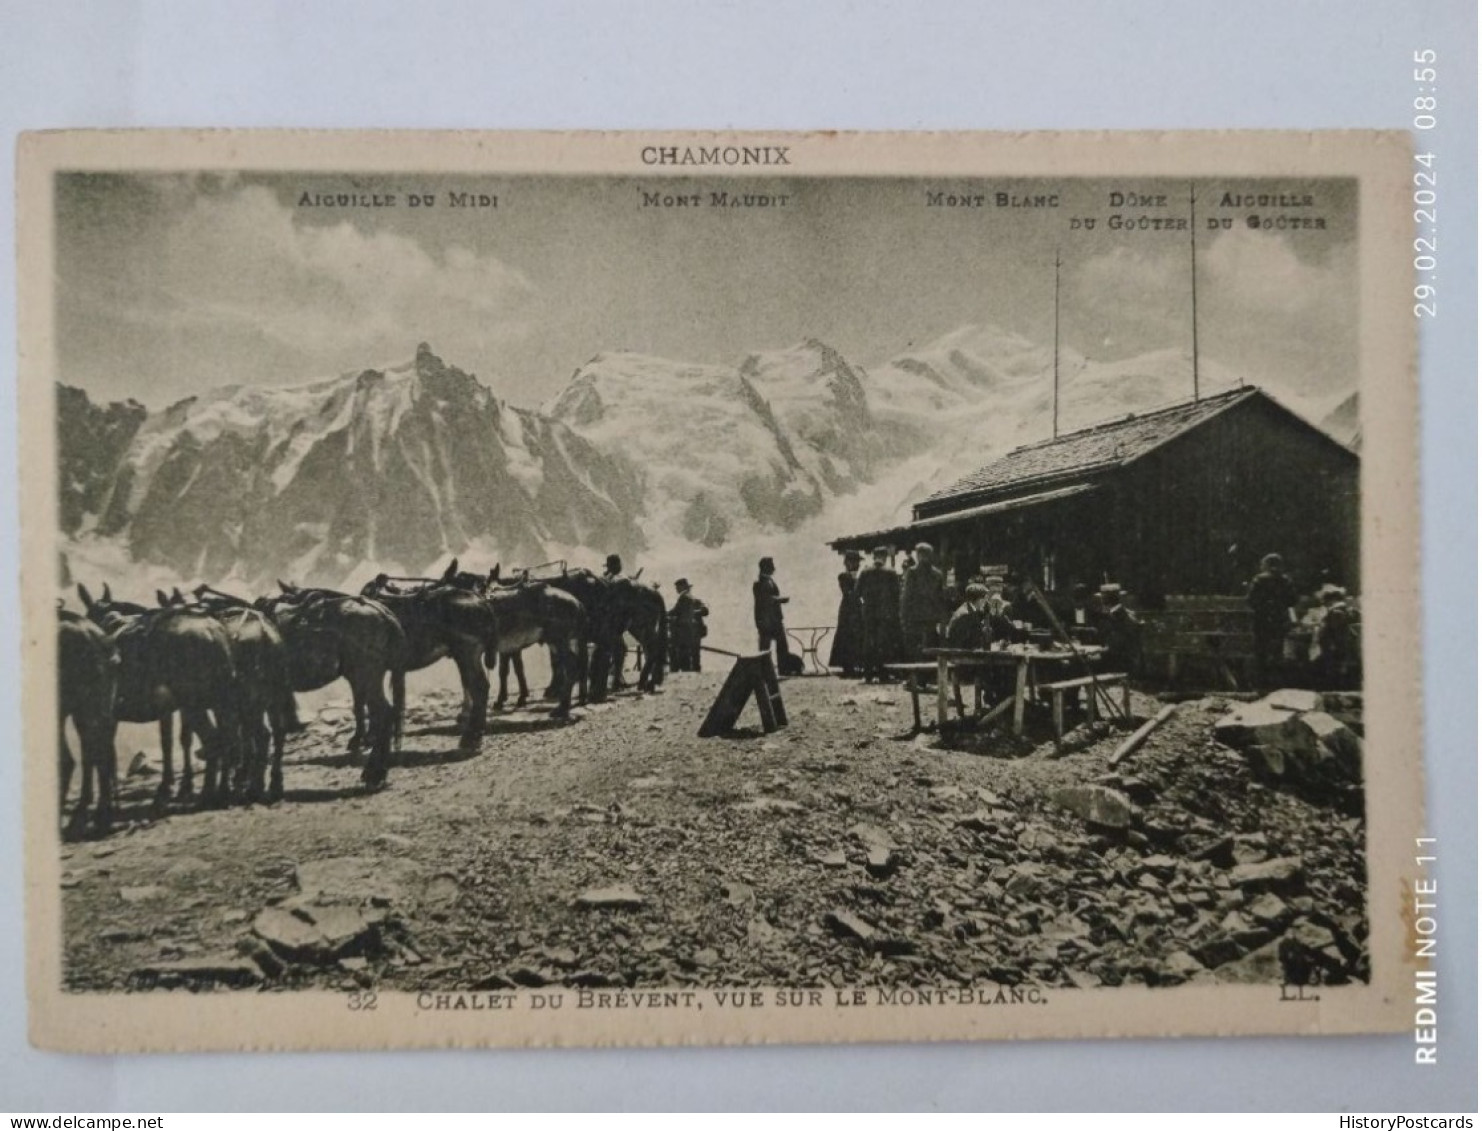 Chamonix, Chalet Du Brevent, Vue Sur Le Mont-Blanc, 1910 - Chamonix-Mont-Blanc